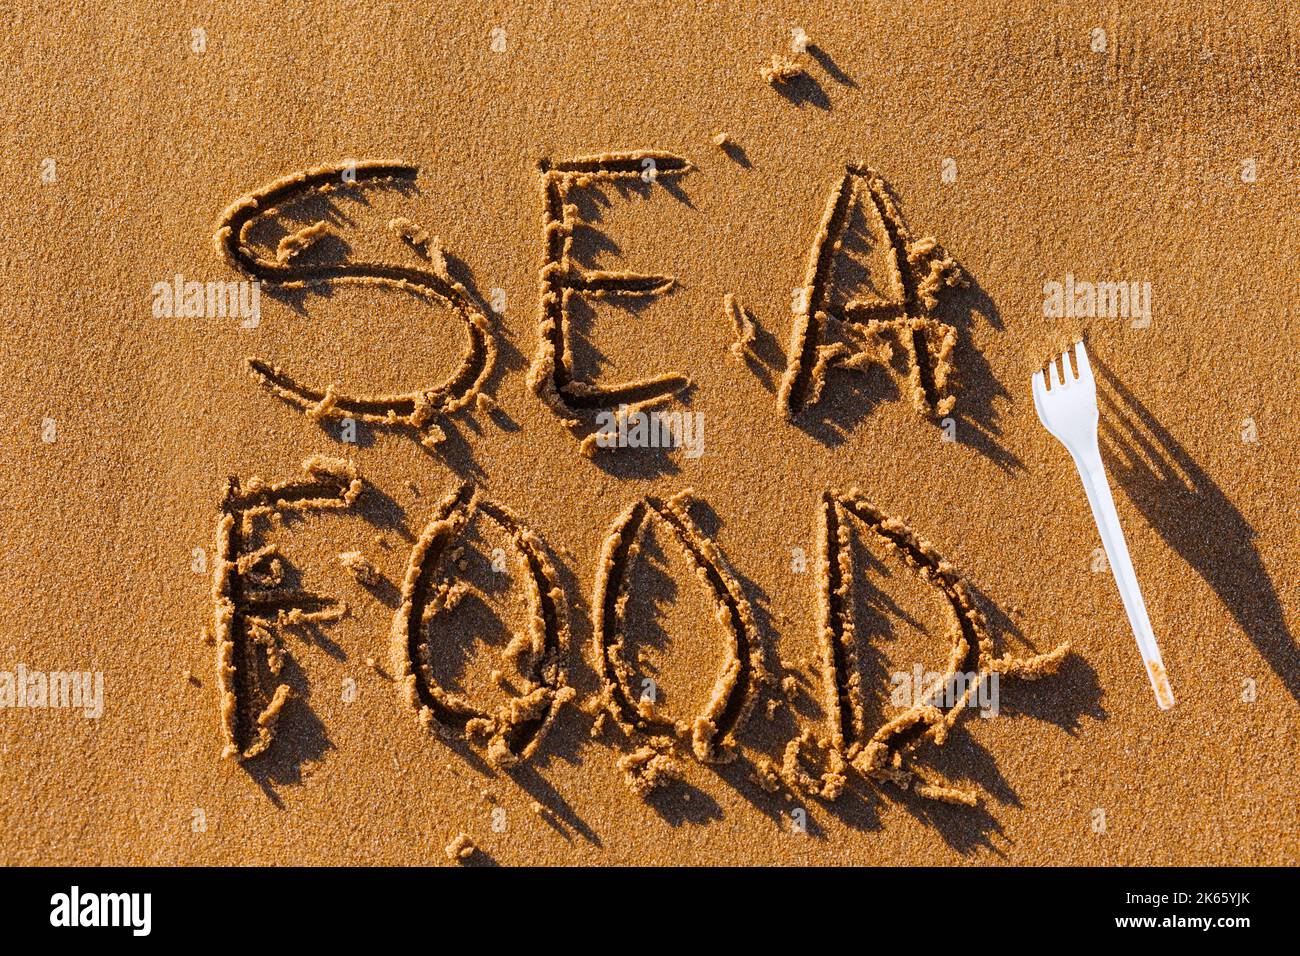 Das Wort Sea Food wird manuell auf den Sand geschrieben. Das Konzept der Meeresküche. Kulinarischer Hintergrund im Sommer. Stockfoto